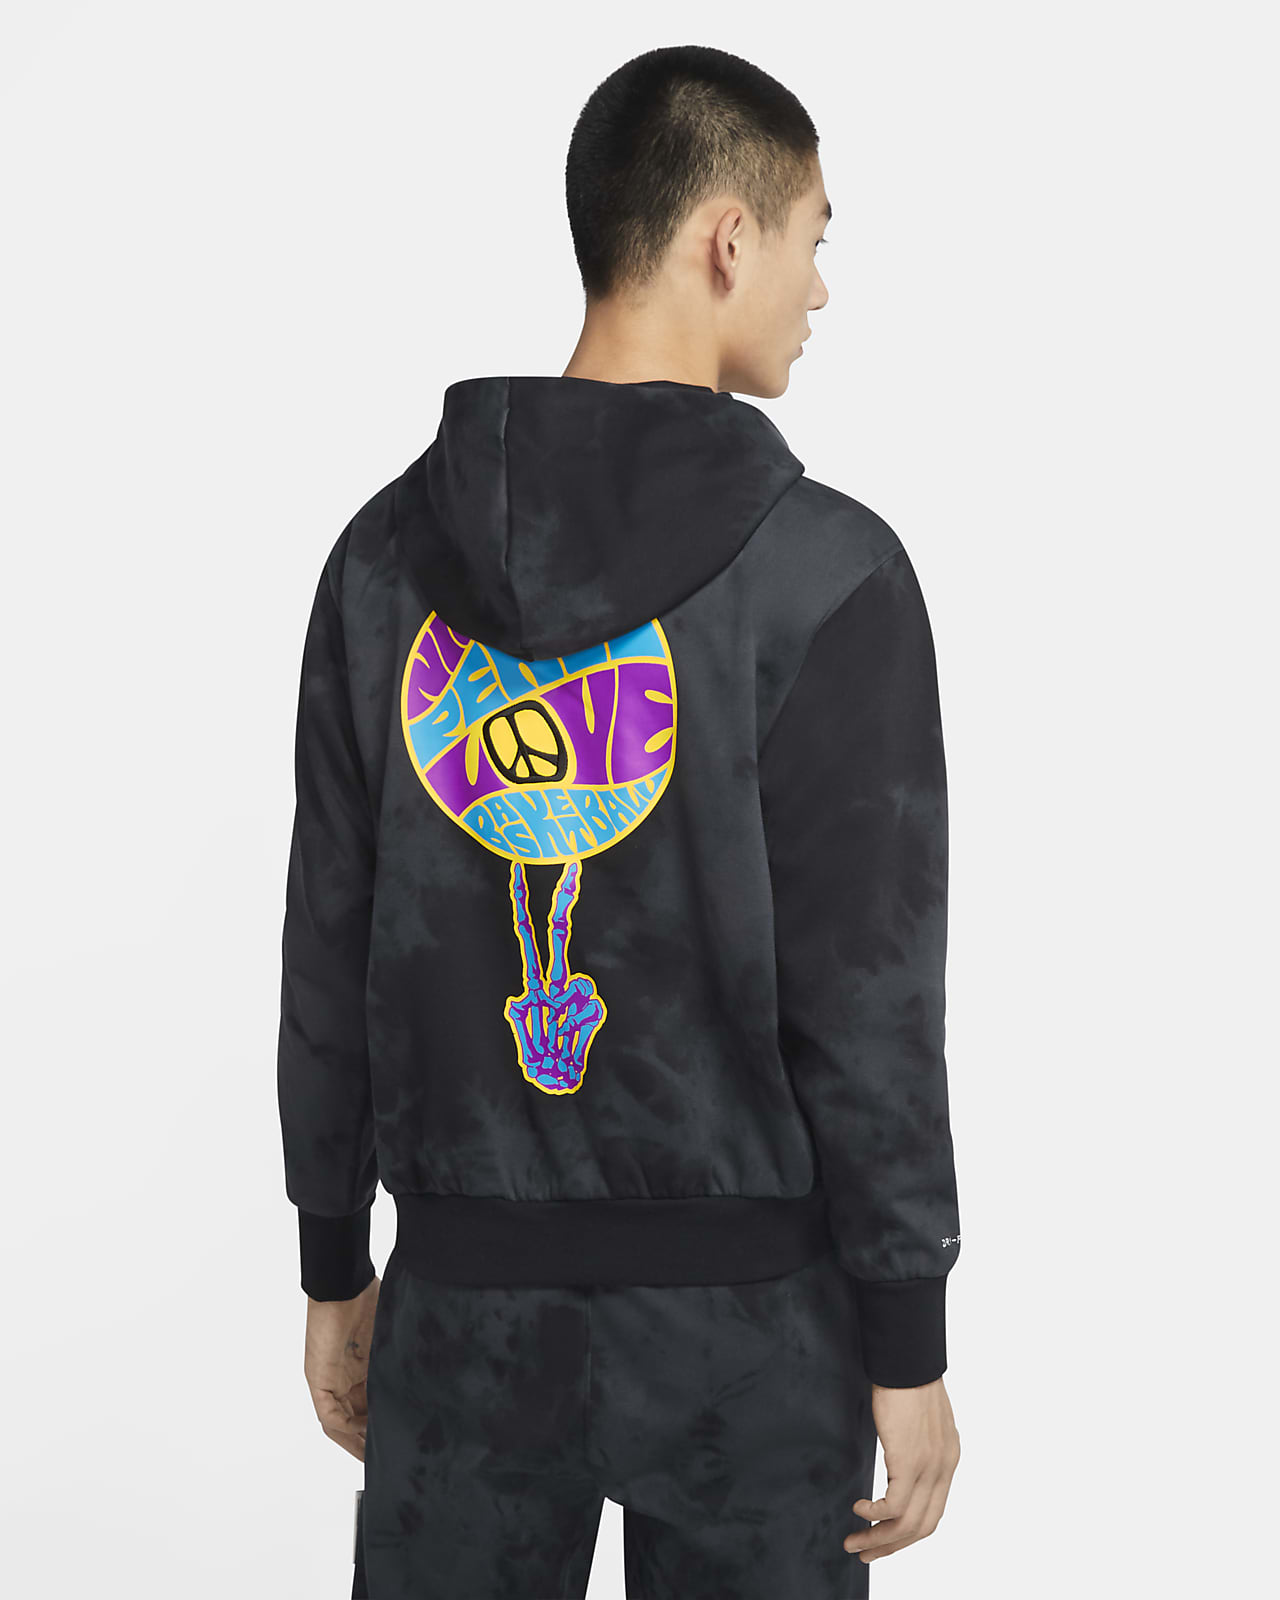 nike exclusive hoodie